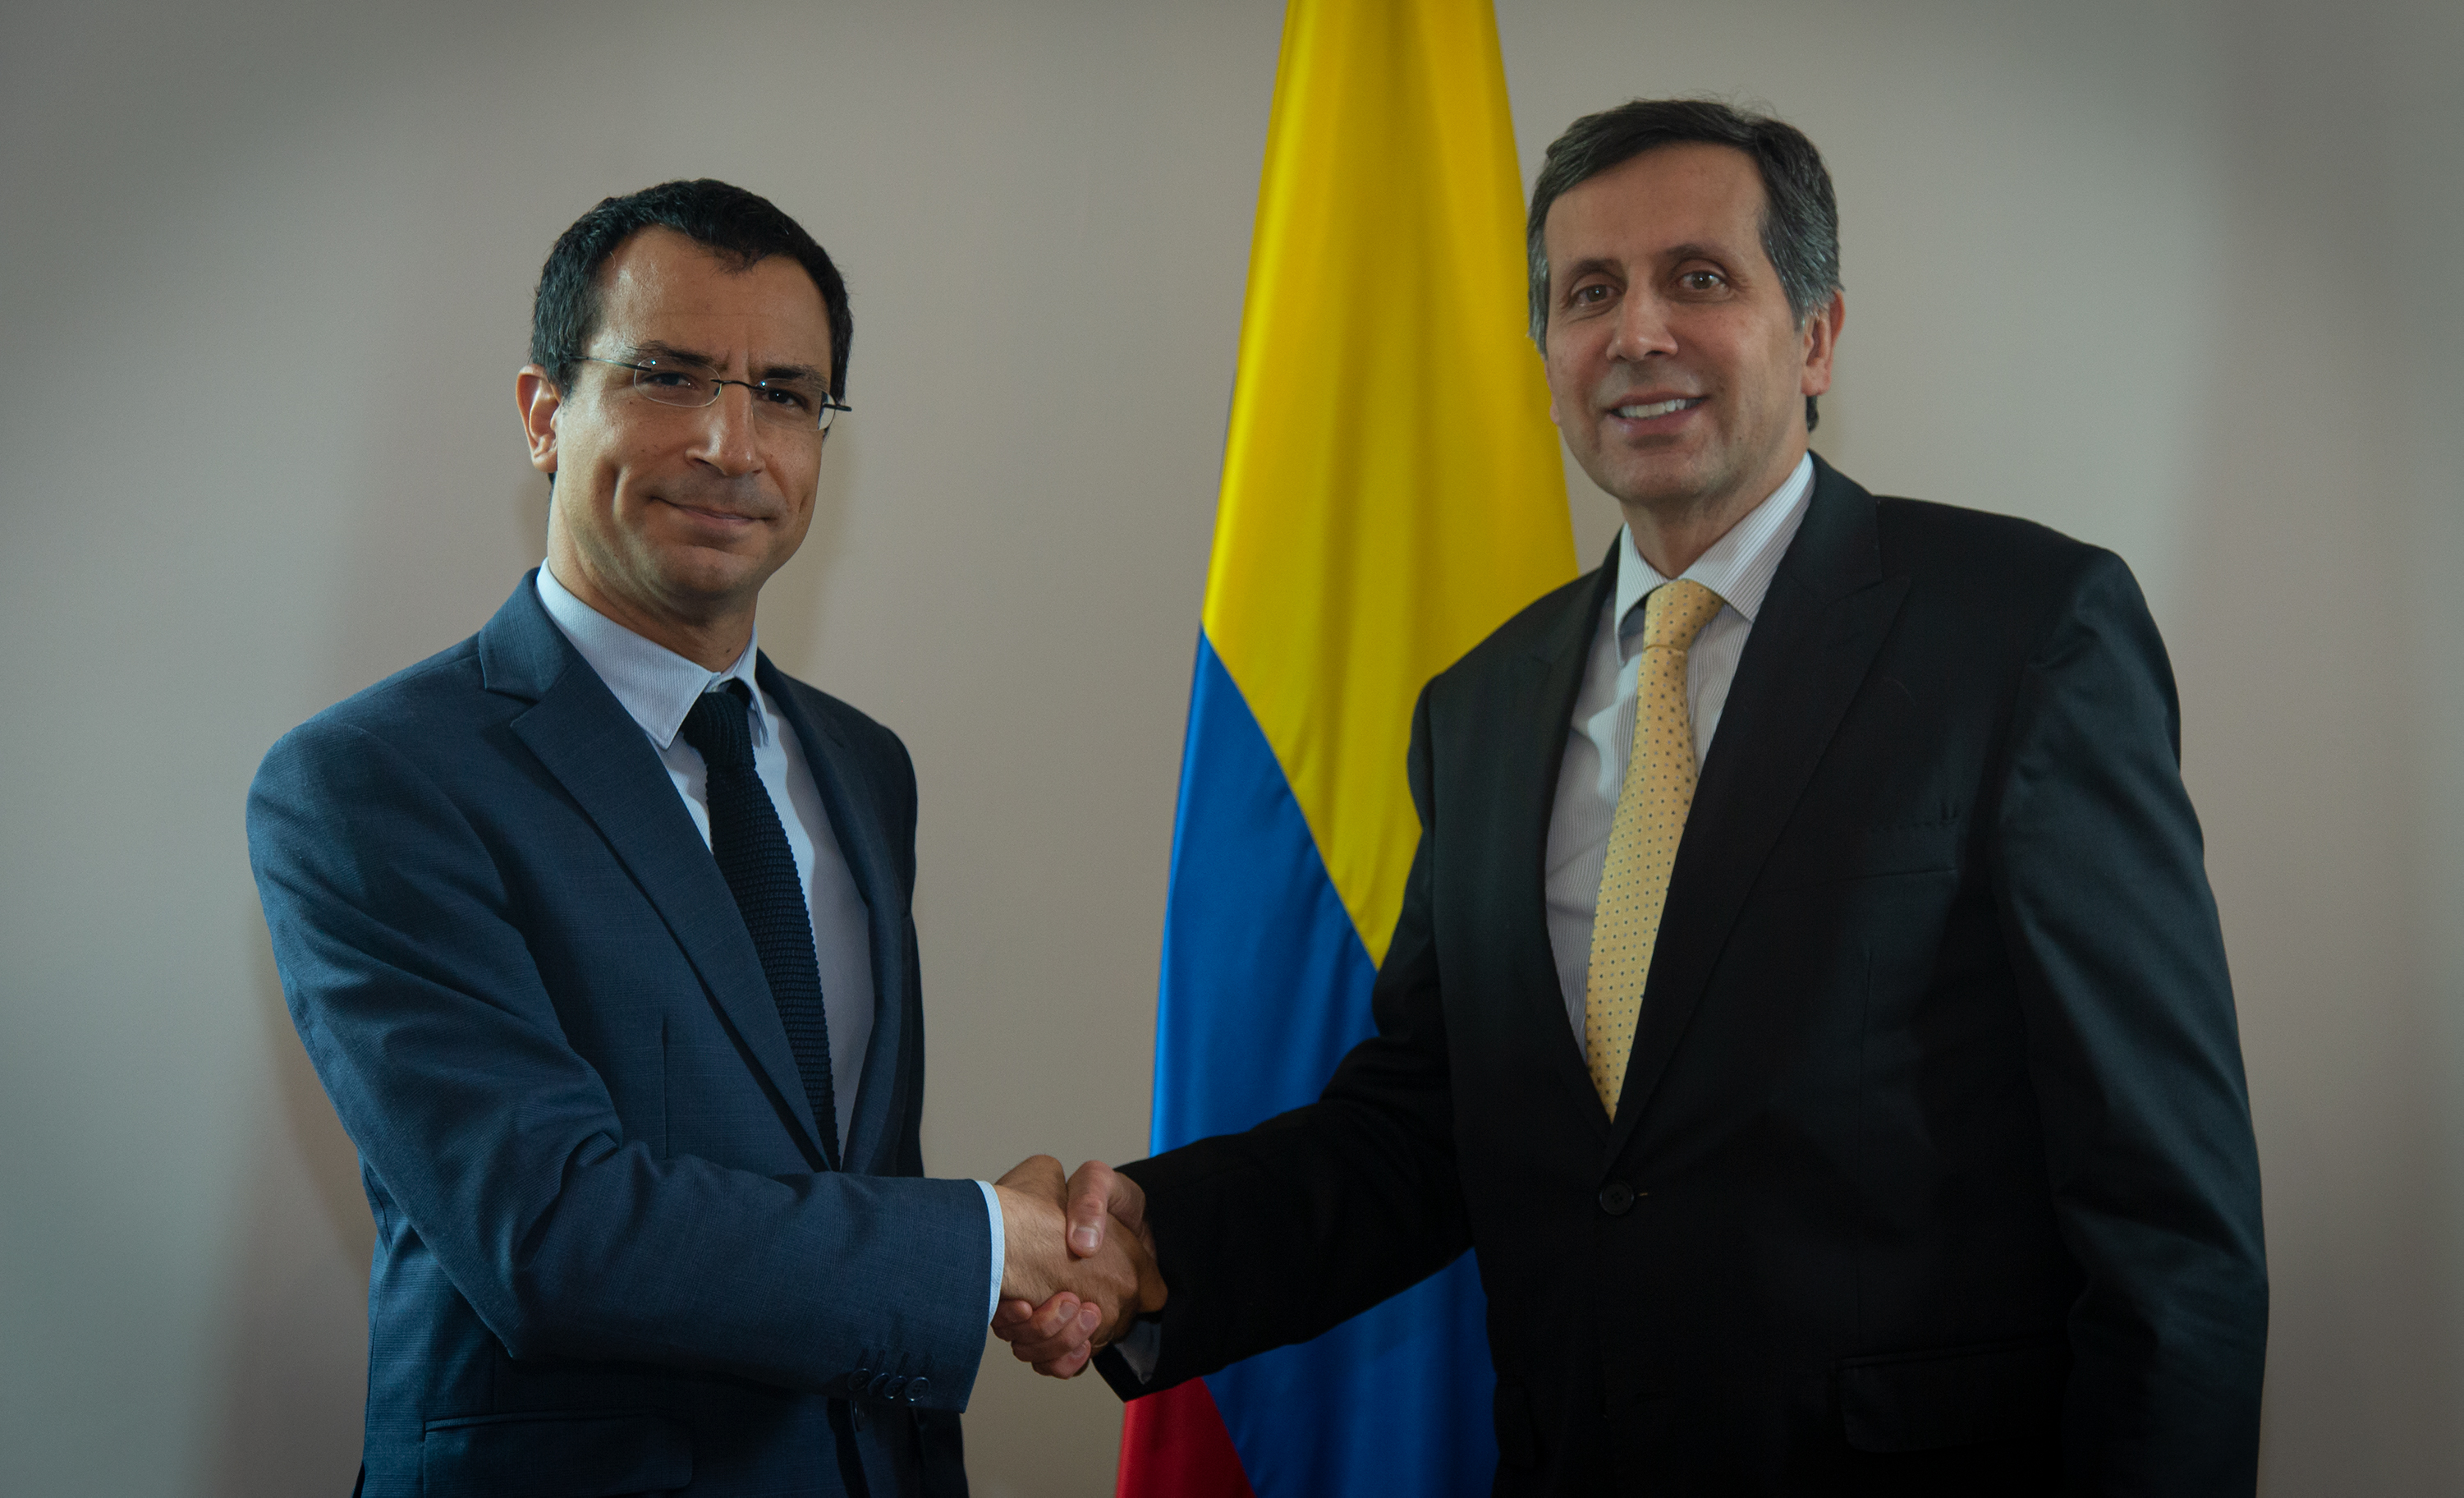 Viceministro Francisco Echeverri dialogó con el Asesor del Primer Ministro de Grecia, Iásonas Pipinis, sobre asuntos bilaterales y la crisis migratoria venezolana